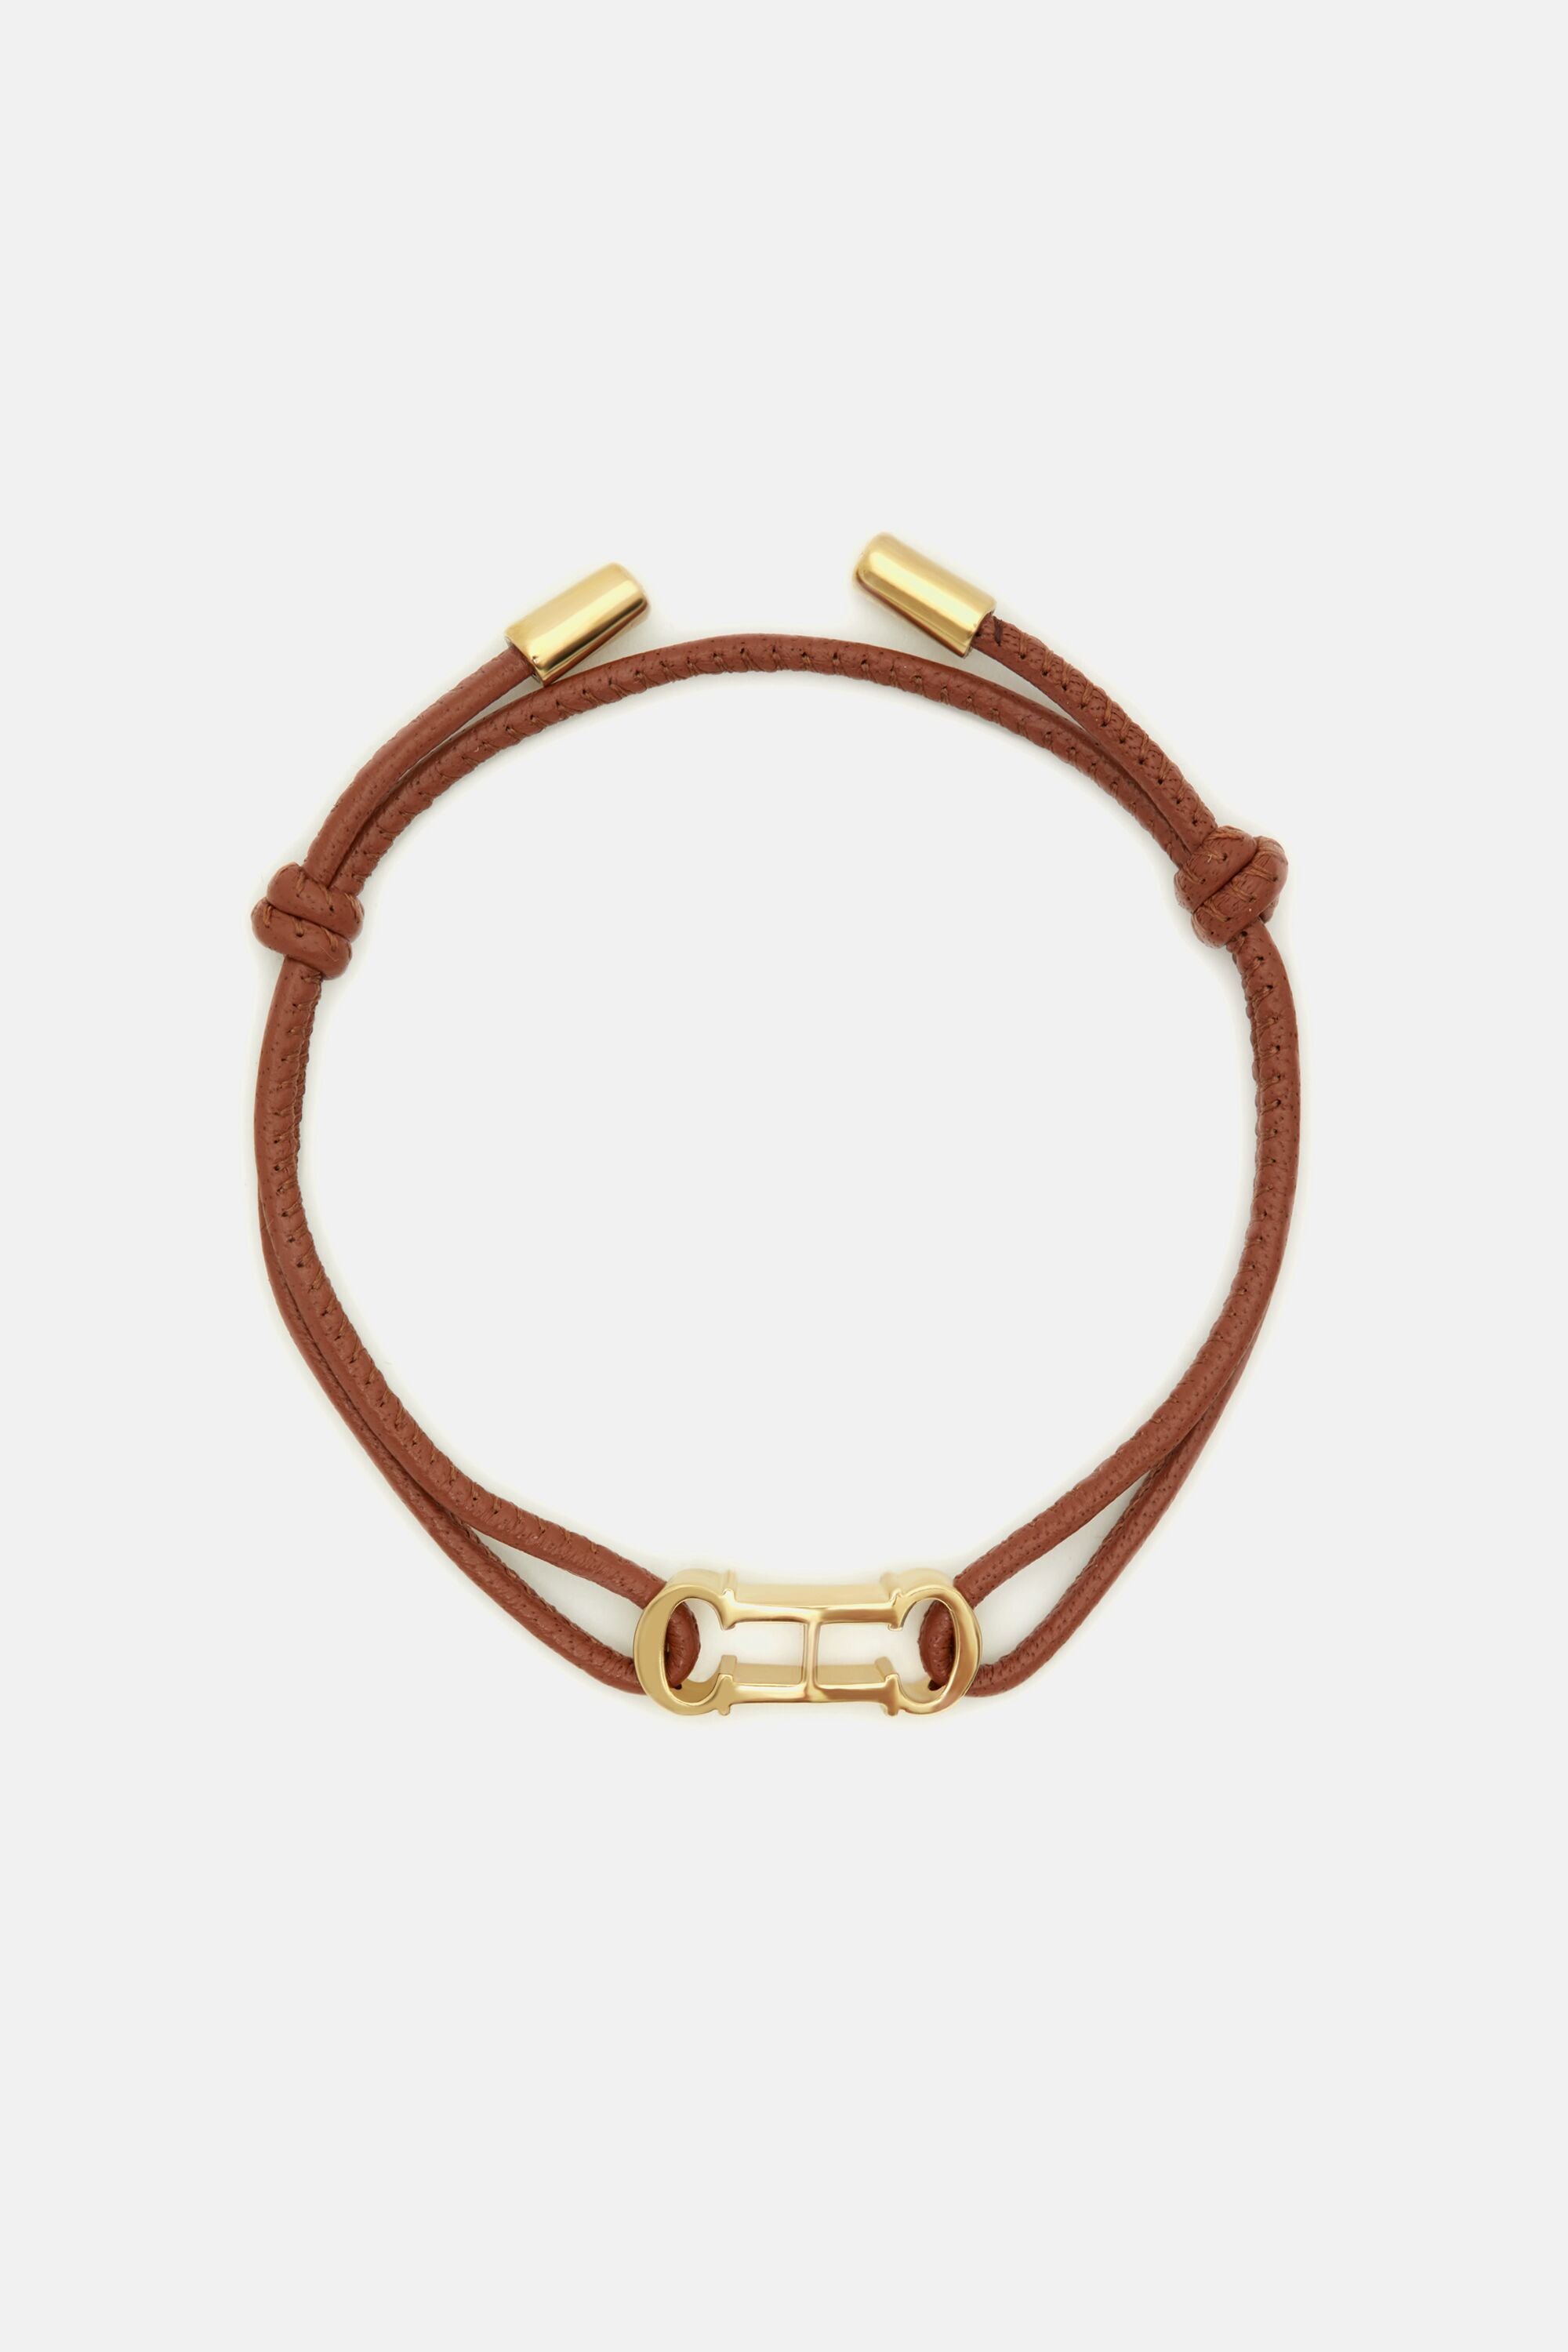 Shop Carolina Herrera Bracelets for Women Online in UAE | Ounass UAE